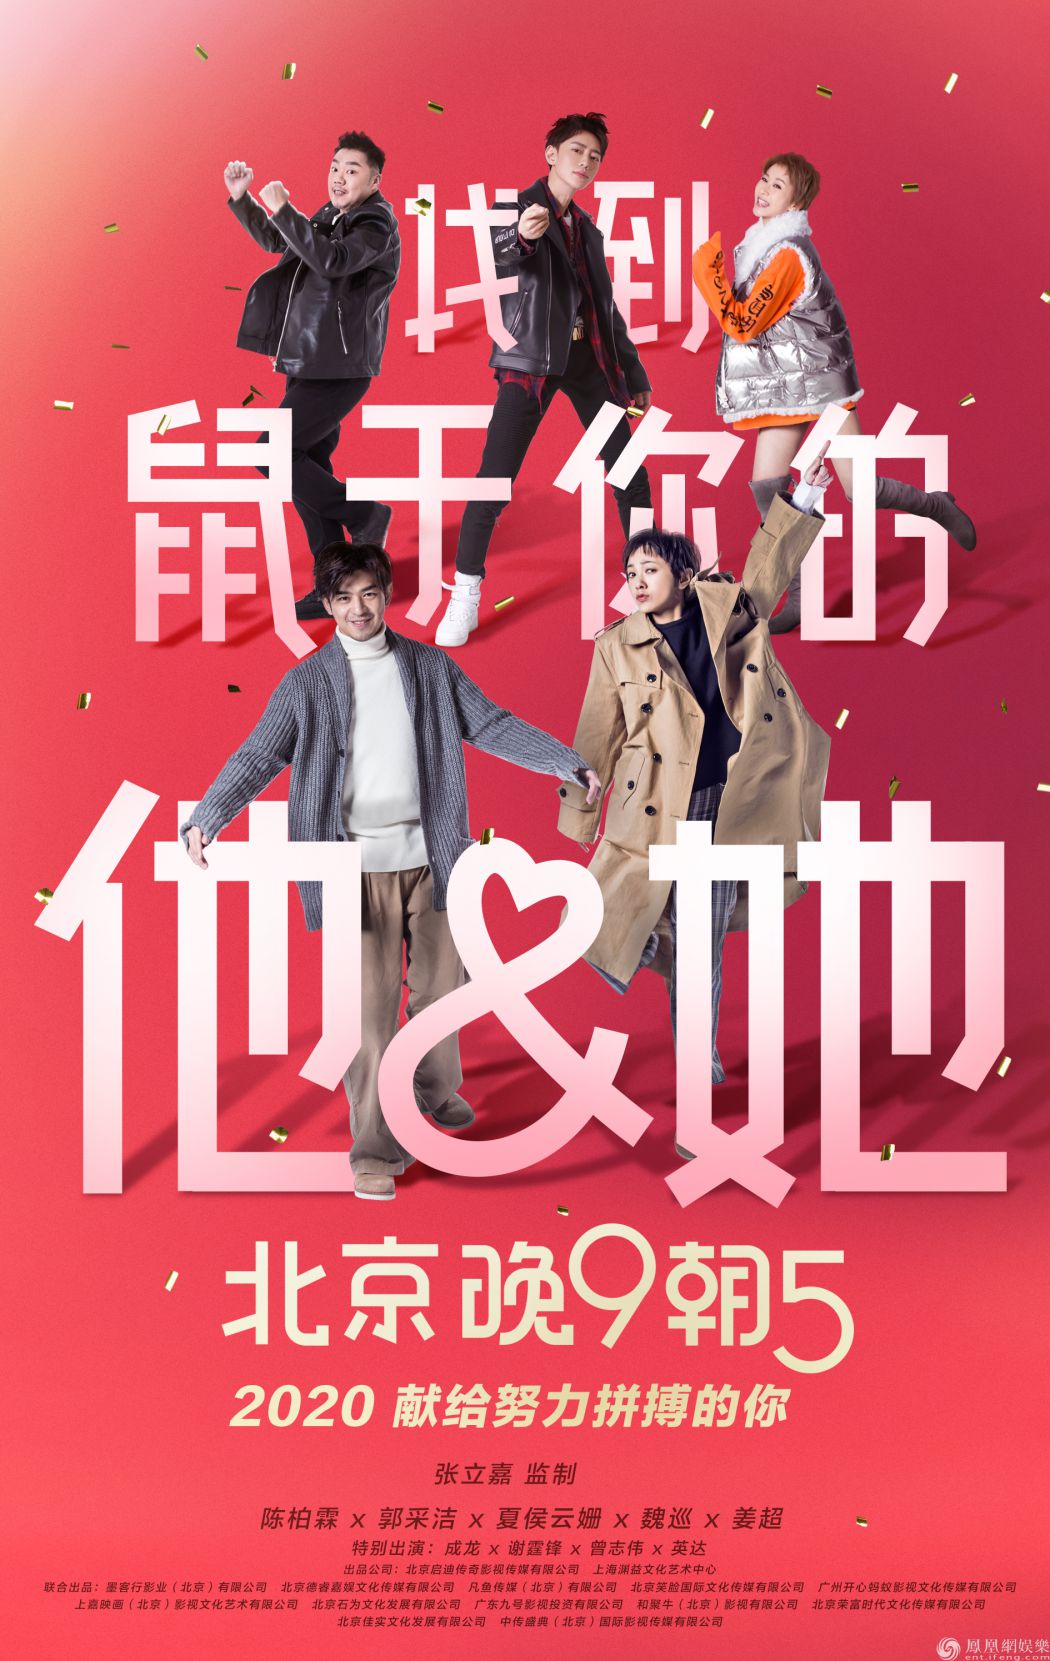 献给努力拼搏的你 《北京晚9朝5》曝新年祝福版海报